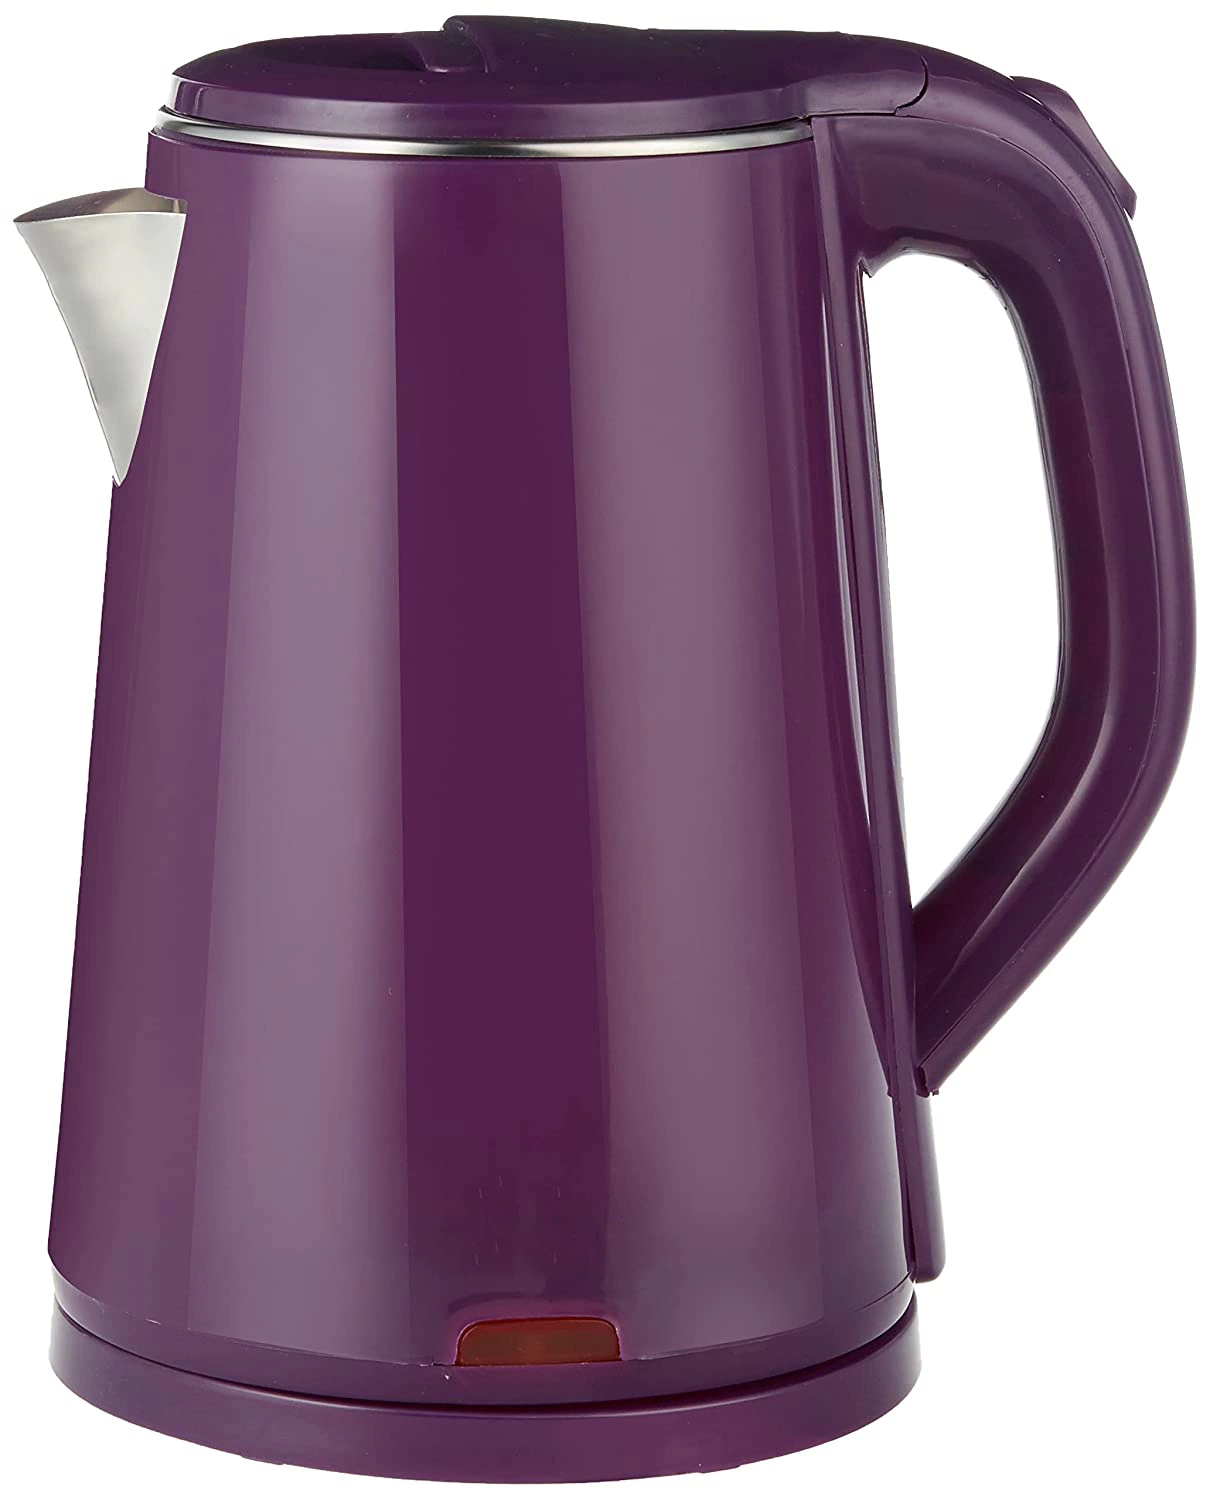 2,0 л воды для приготовления чая и кофе бойлер потенциометра беспроводные фиолетовый двойные стенки электрический чайник Вьетнам/Таиланд домашняя кухня прибора